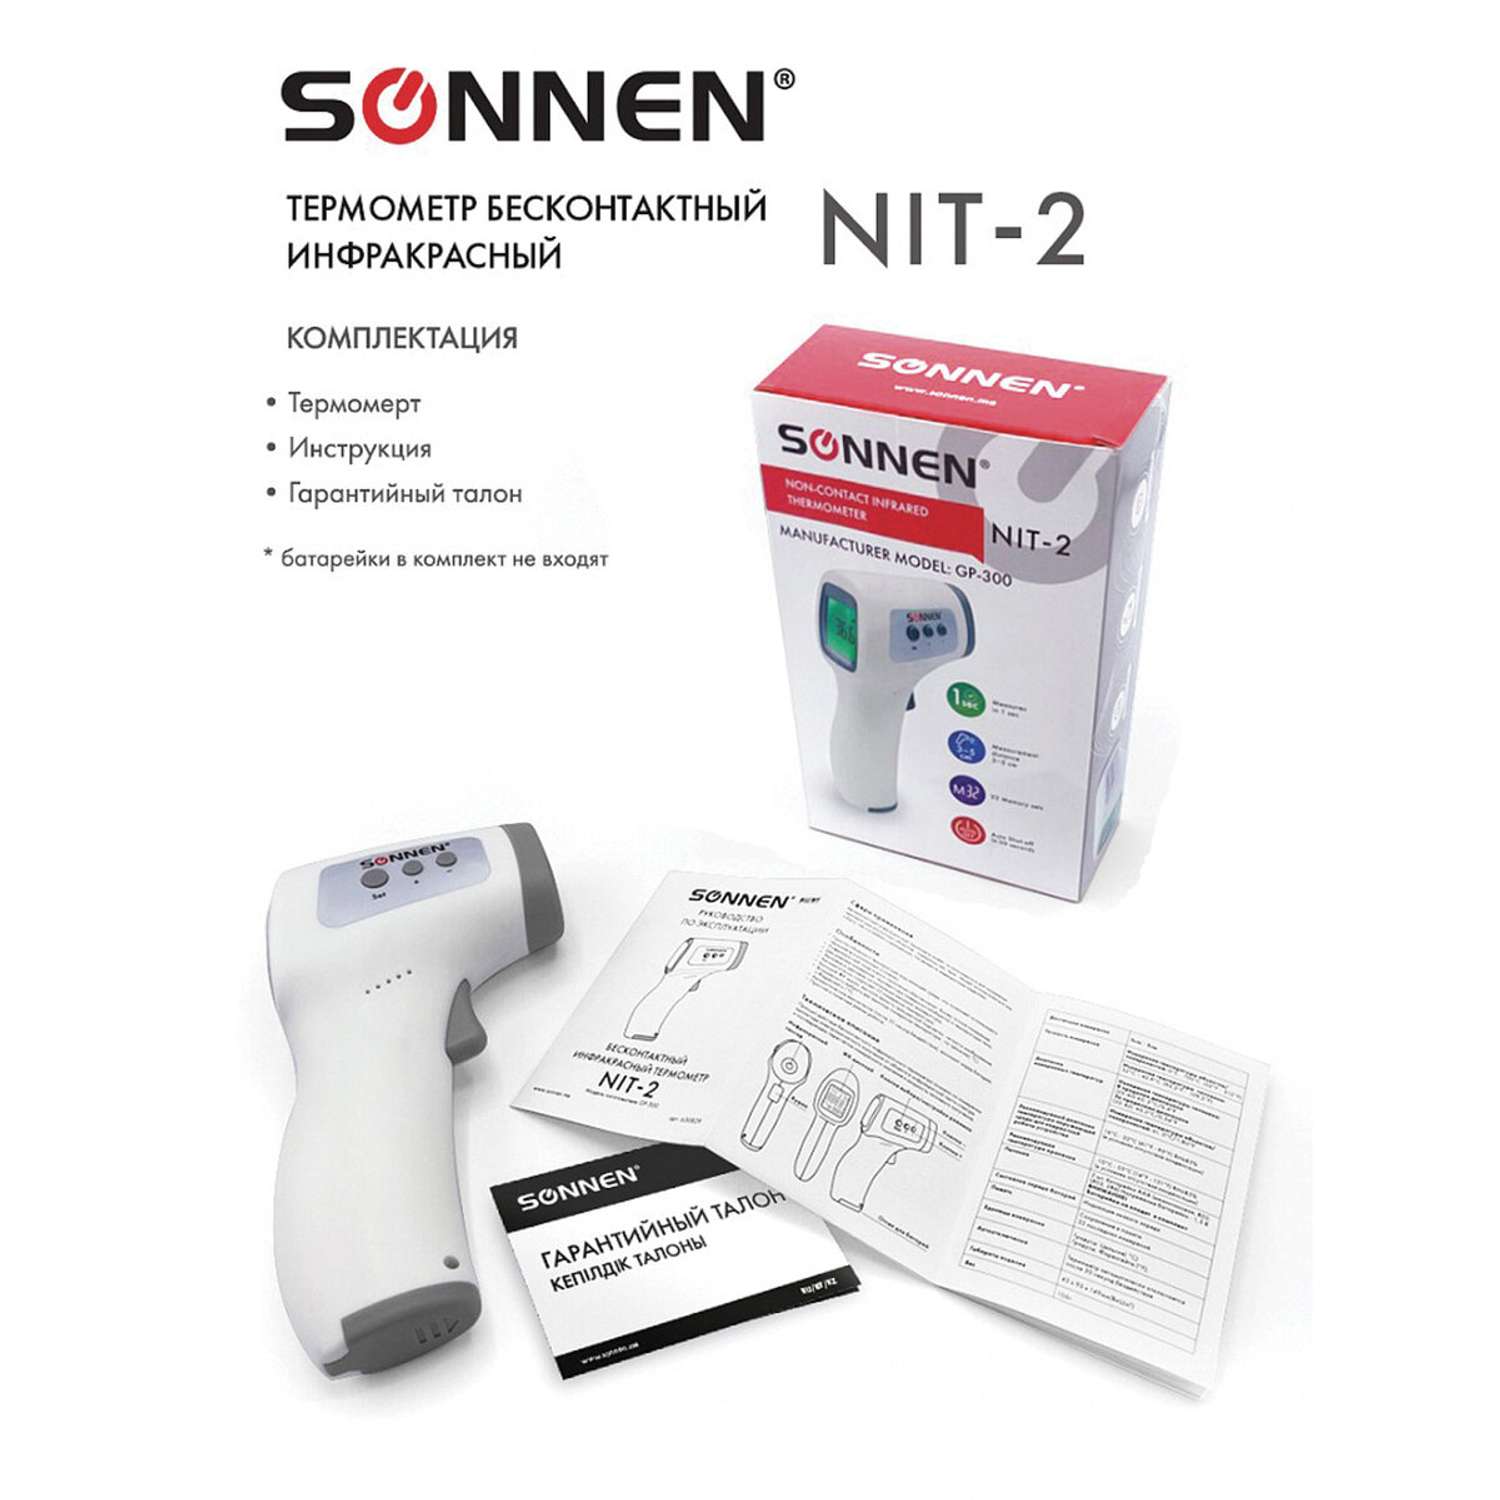 Термометр Sonnen бесконтактный инфракрасный NIT-2 GP-300 электронный - фото 6